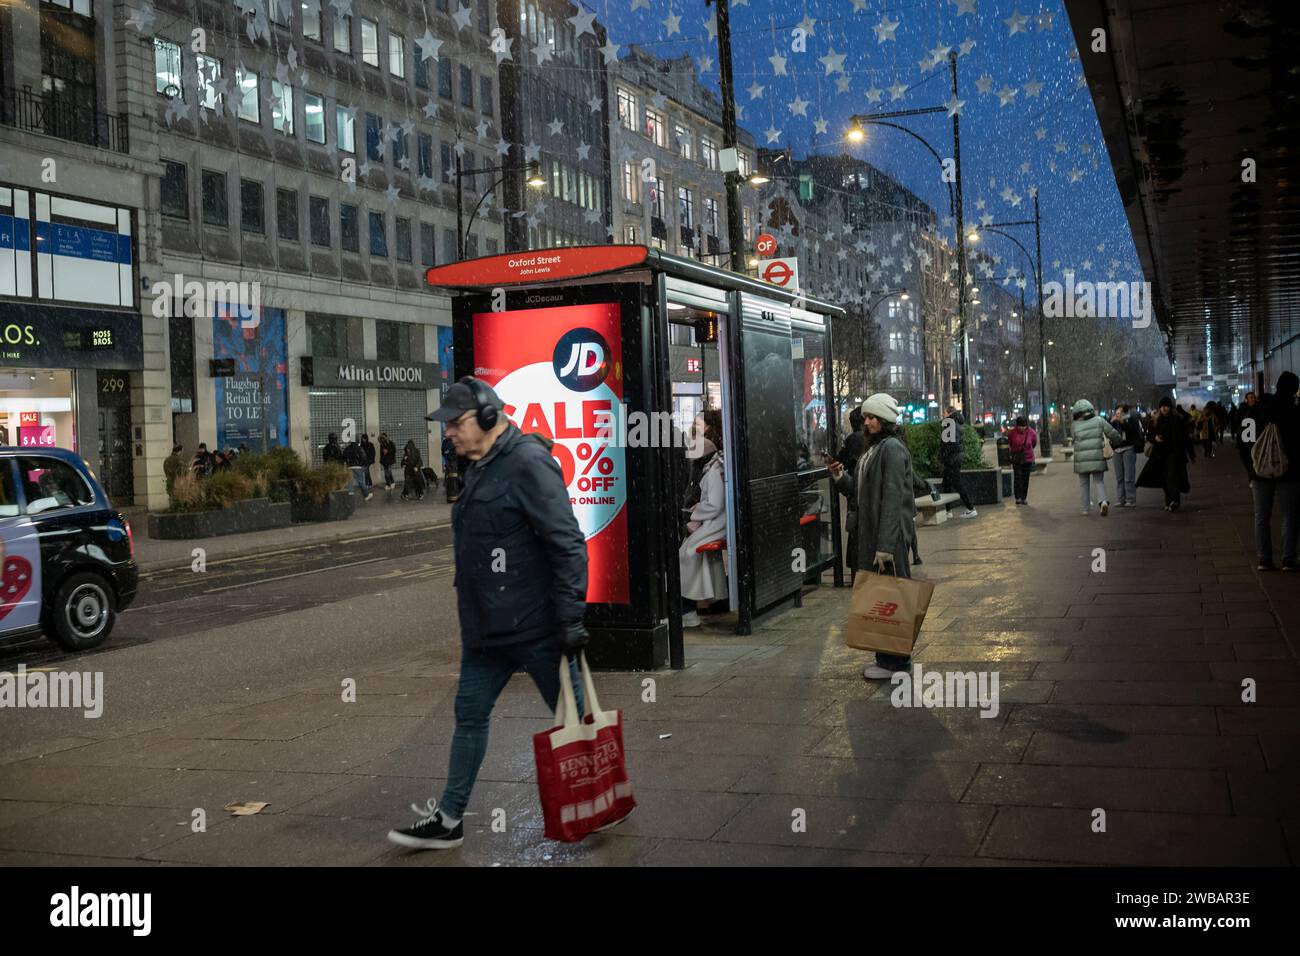 Gli amanti dello shopping affrontano il freddo inverno durante le nevi fredde e le docce a pioggia su Oxford Street, la High Street più trafficata di Londra, Inghilterra, Regno Unito Foto Stock